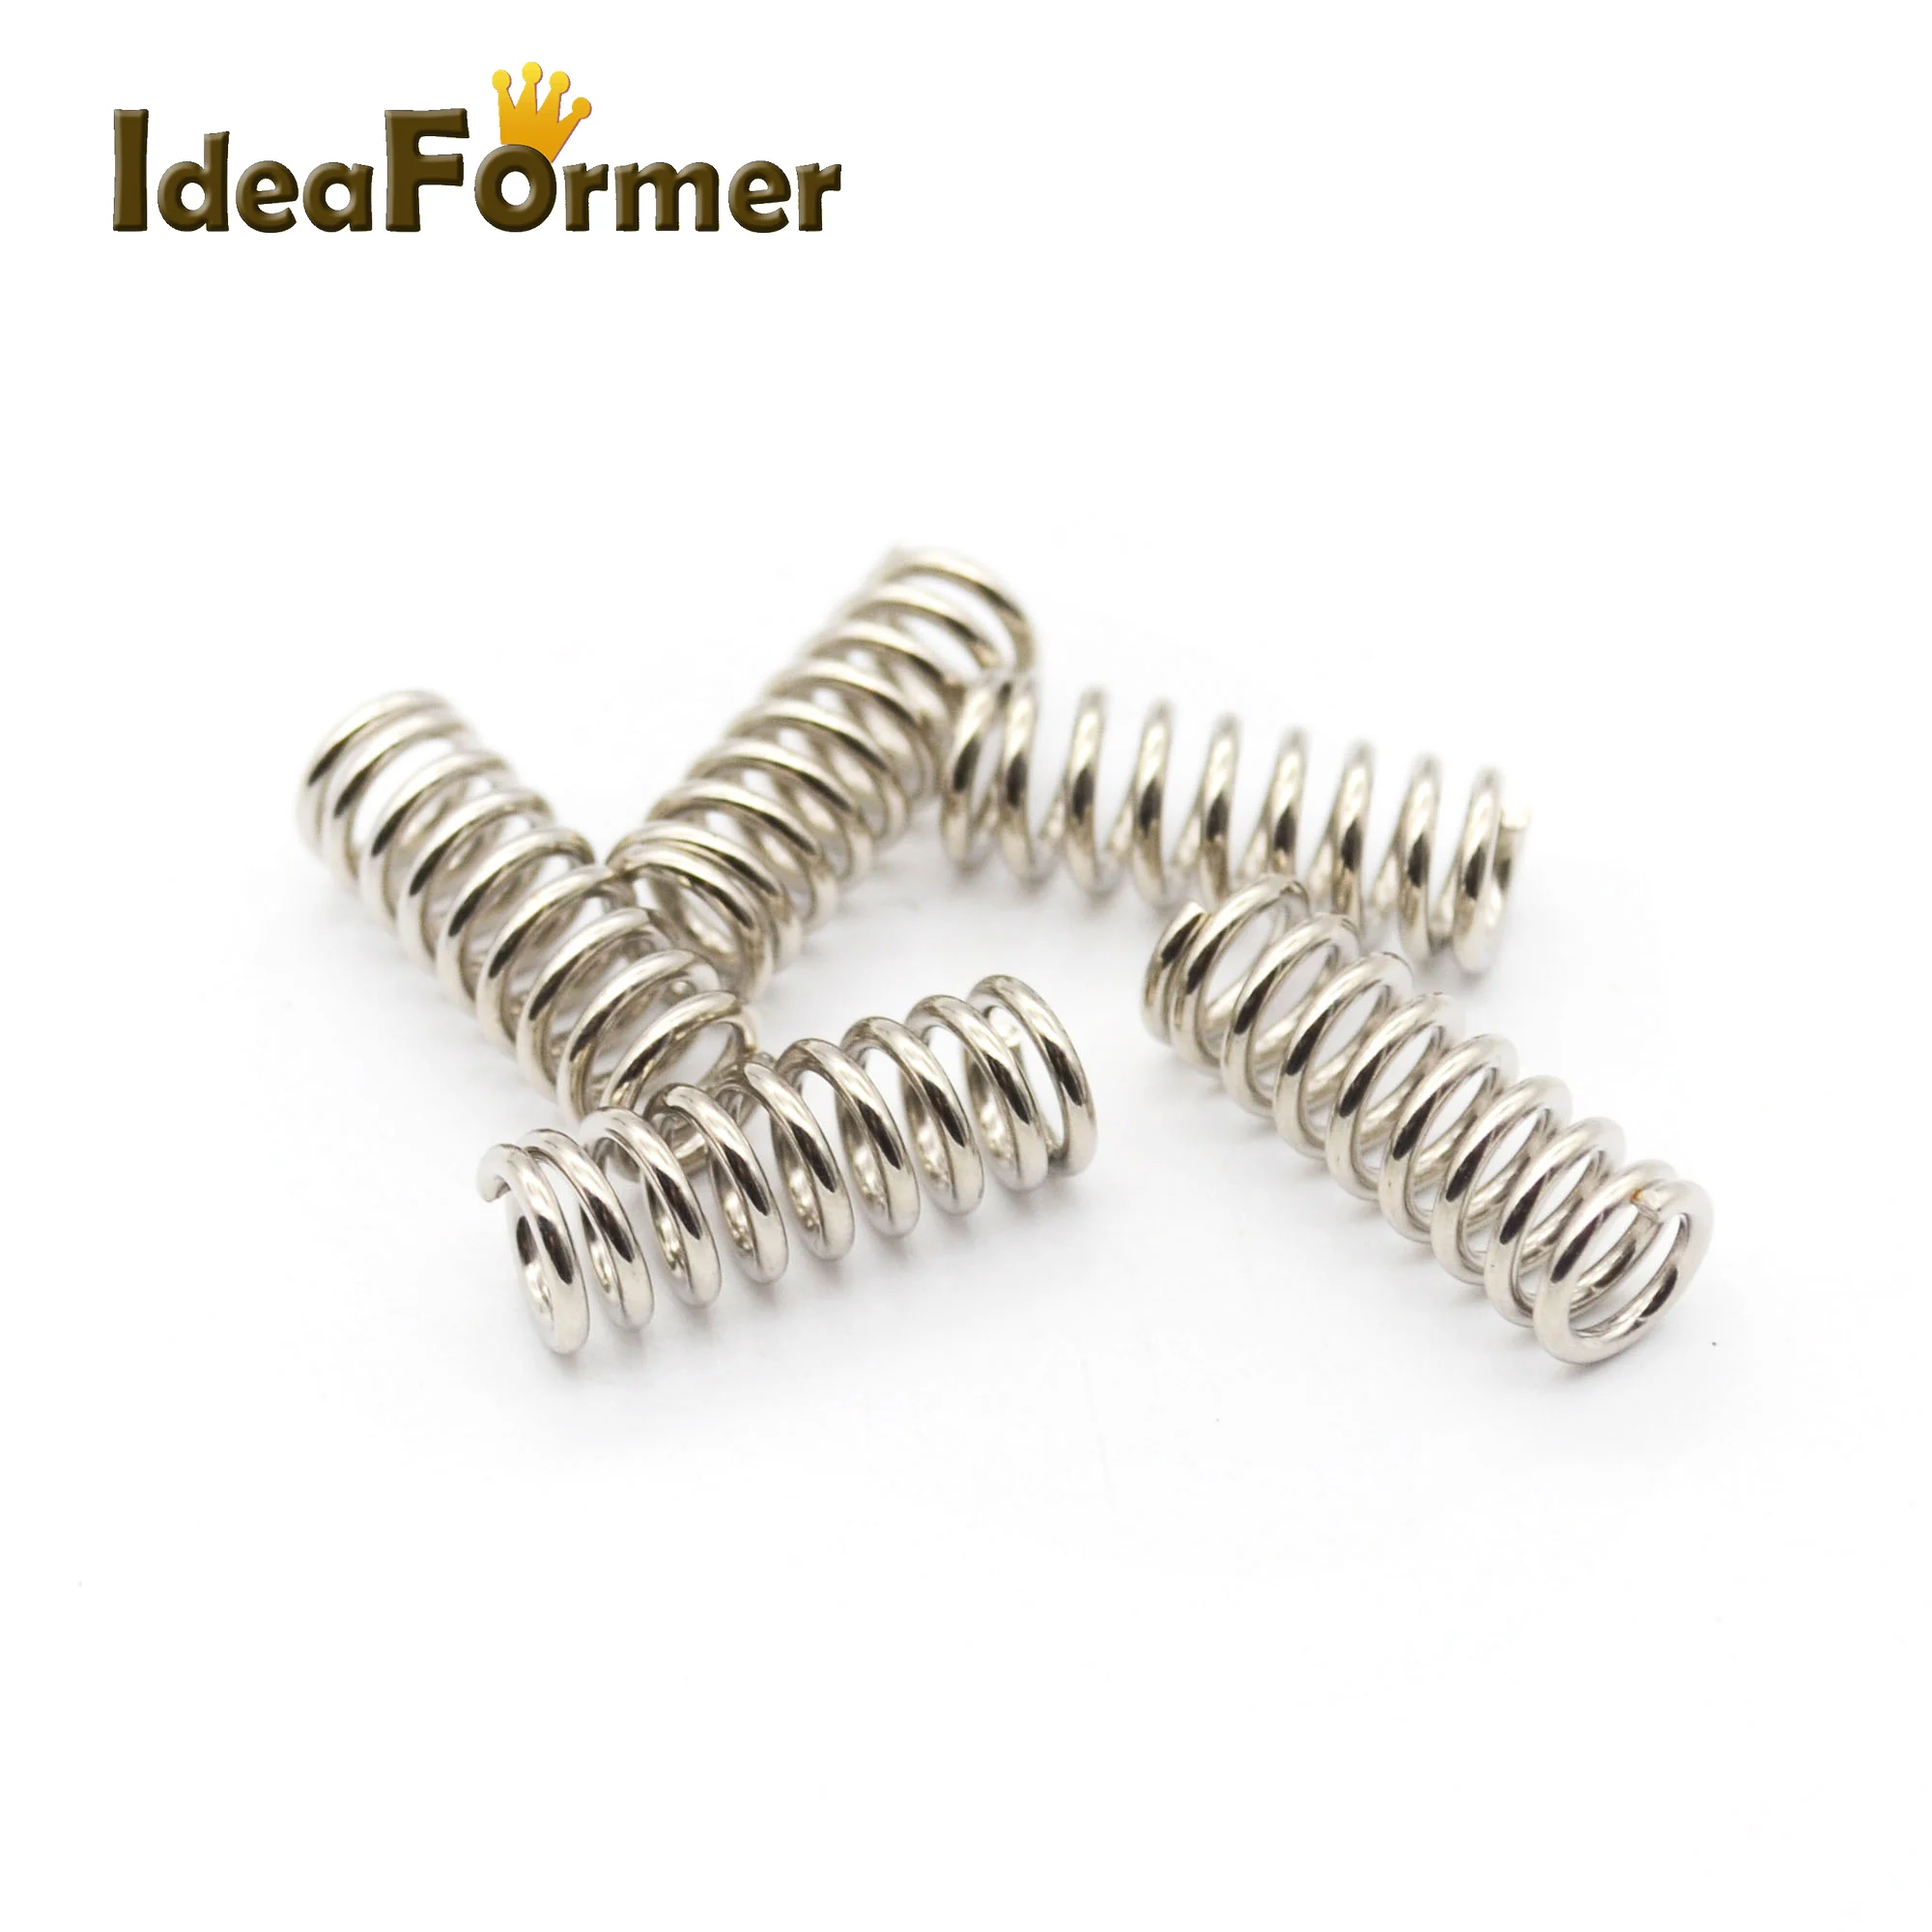 IdeaFormer, 10 шт./партия, аксессуары для 3D-принтера, фидерная пружина для Ultimaker MK, экструдер, никелированная пружина 1,2 мм, 20 мм, высокое качество